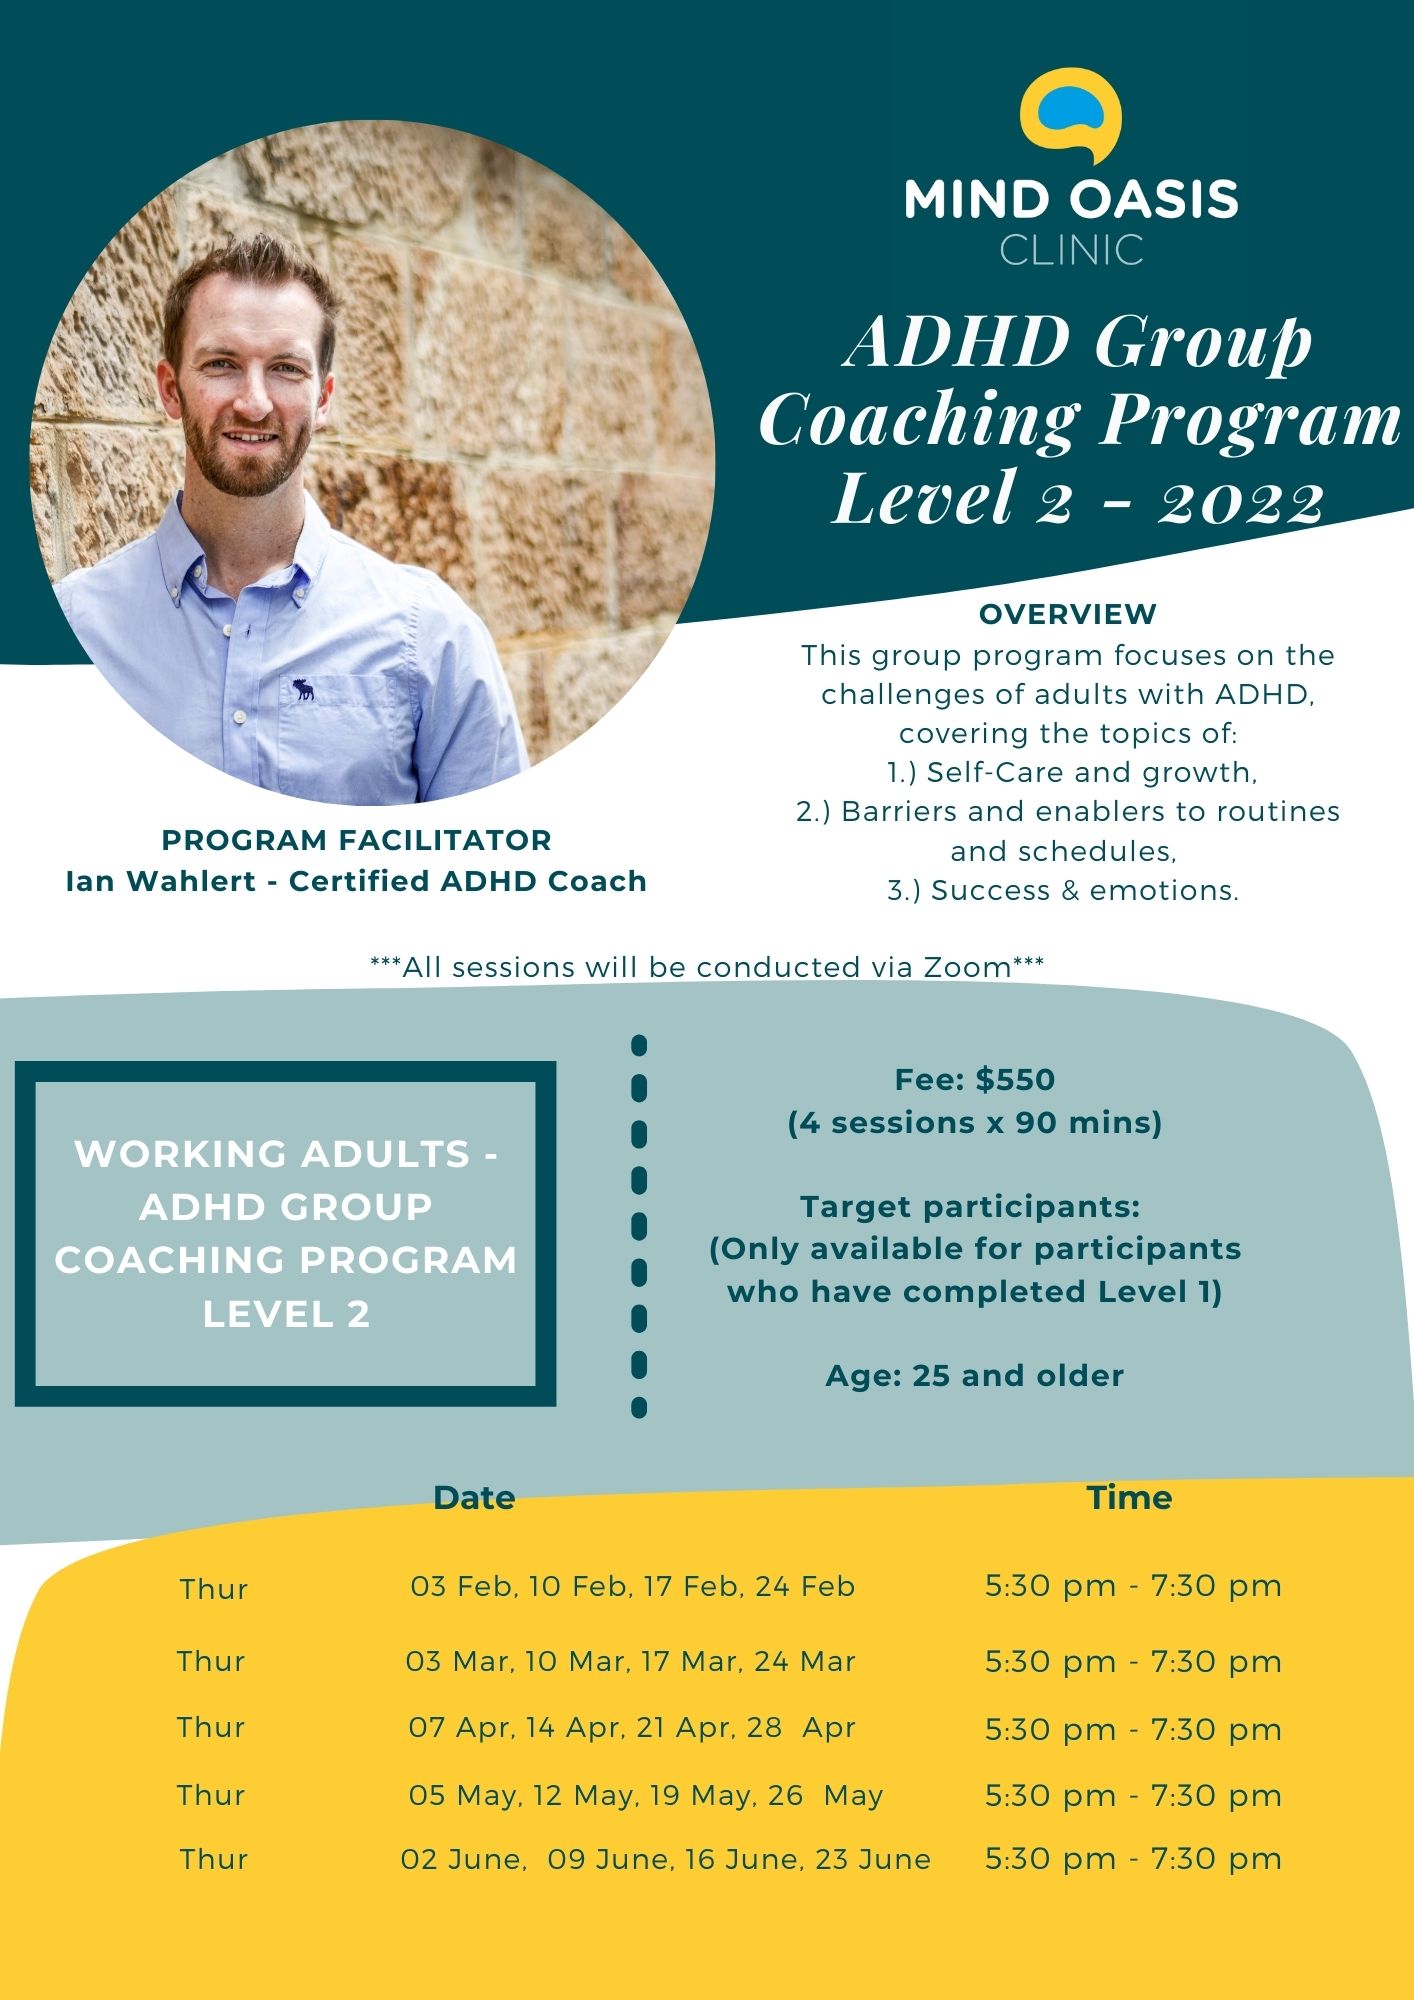 ADHD Coaching Program